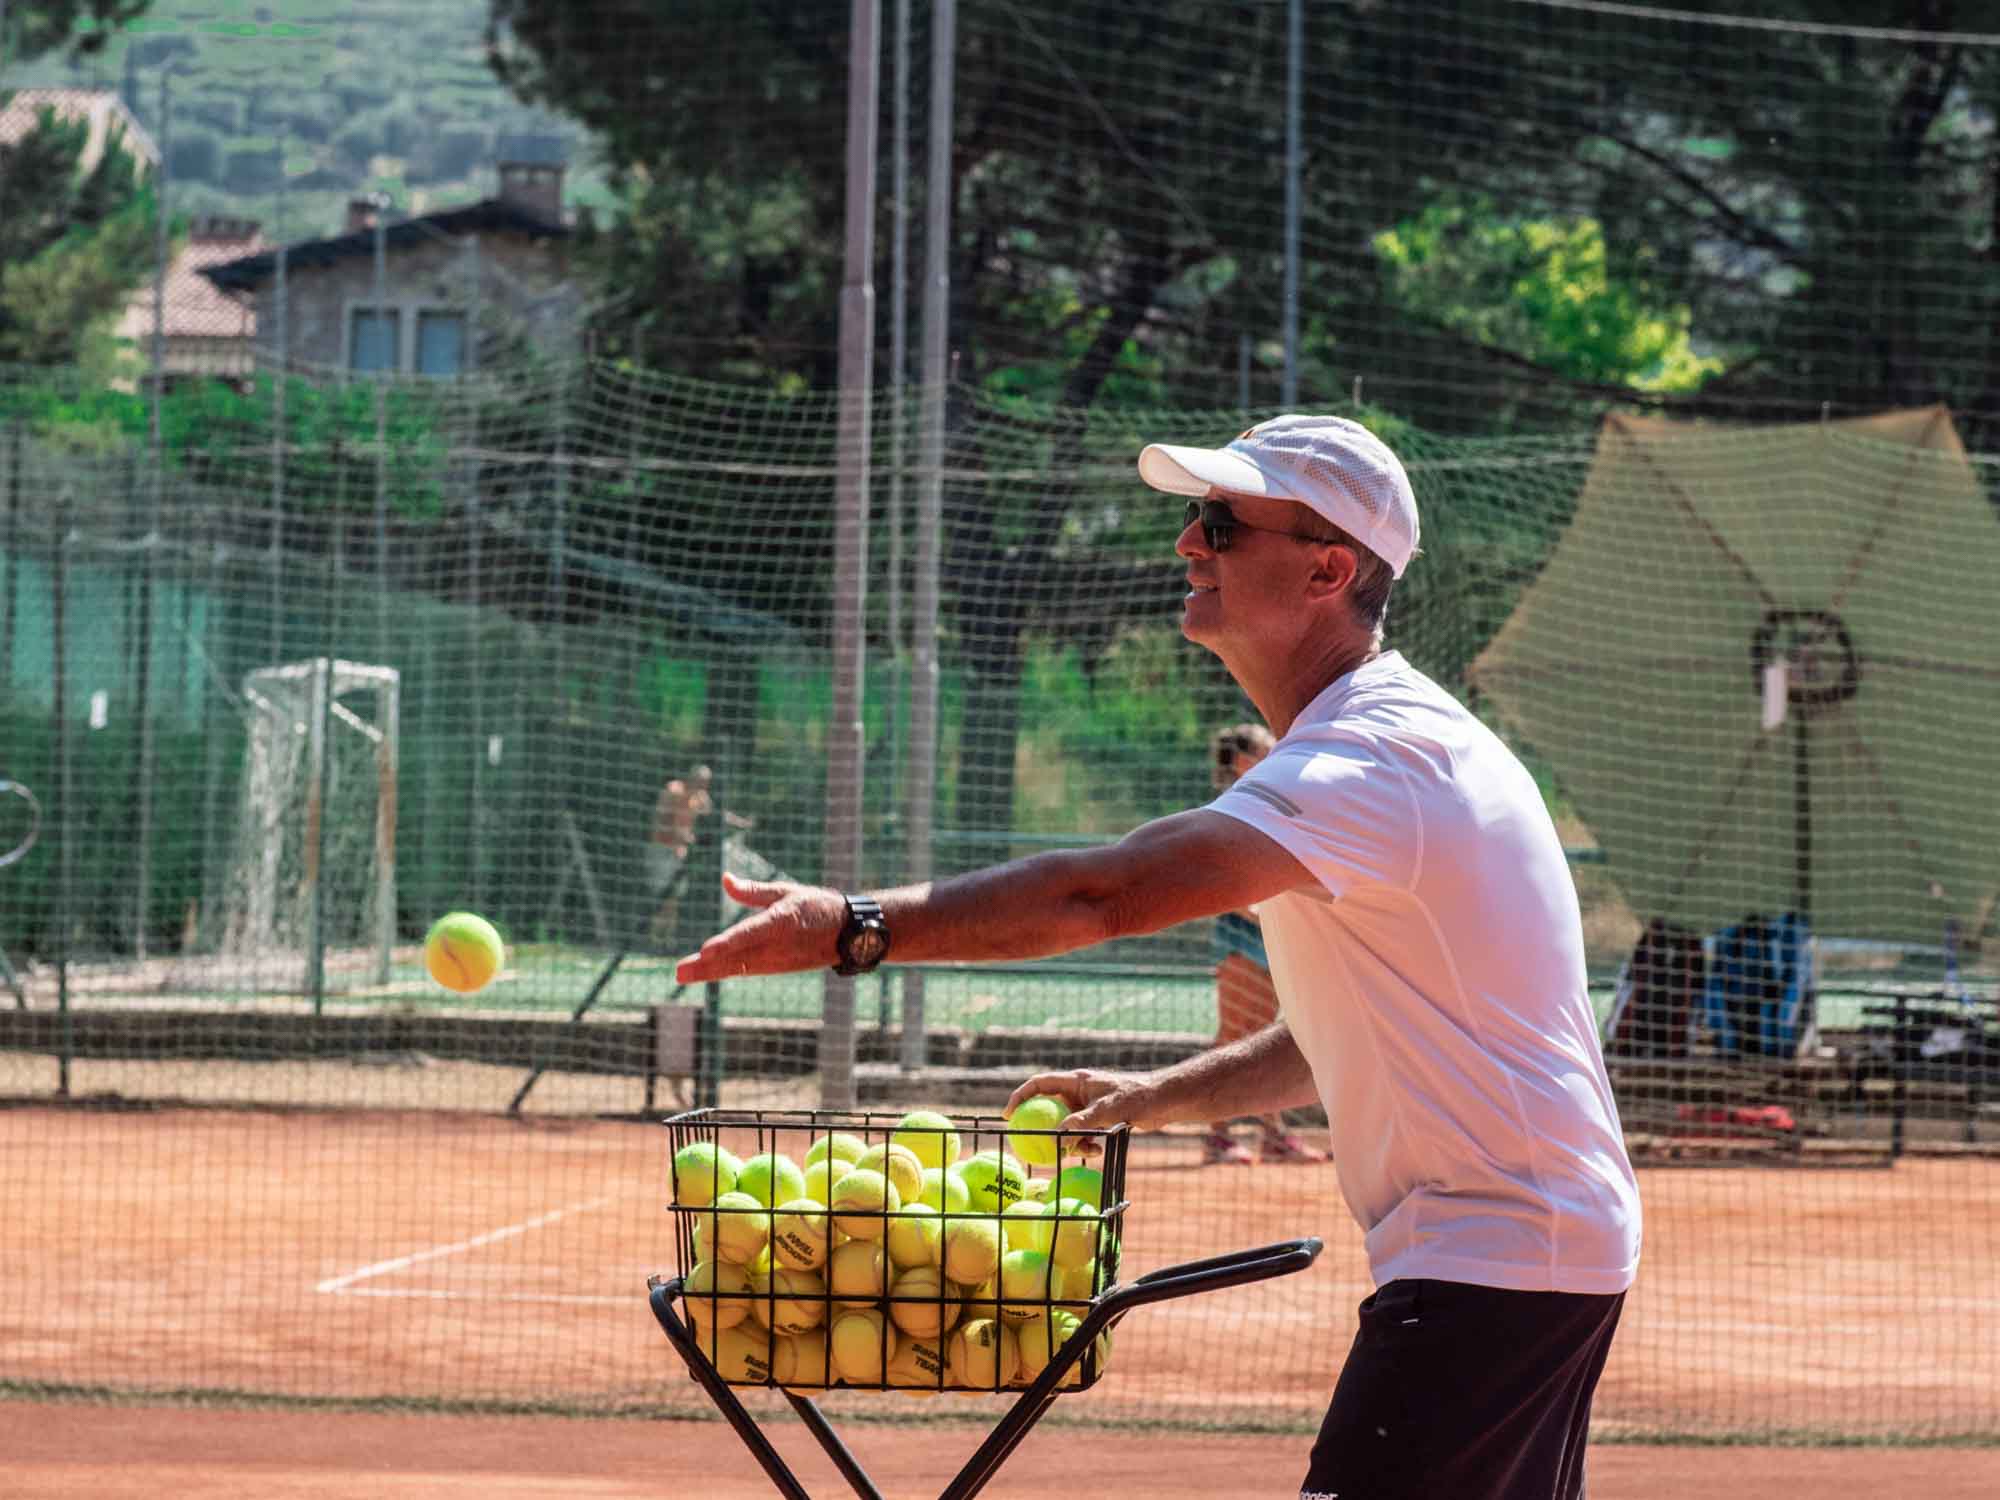 Tennis a Verona